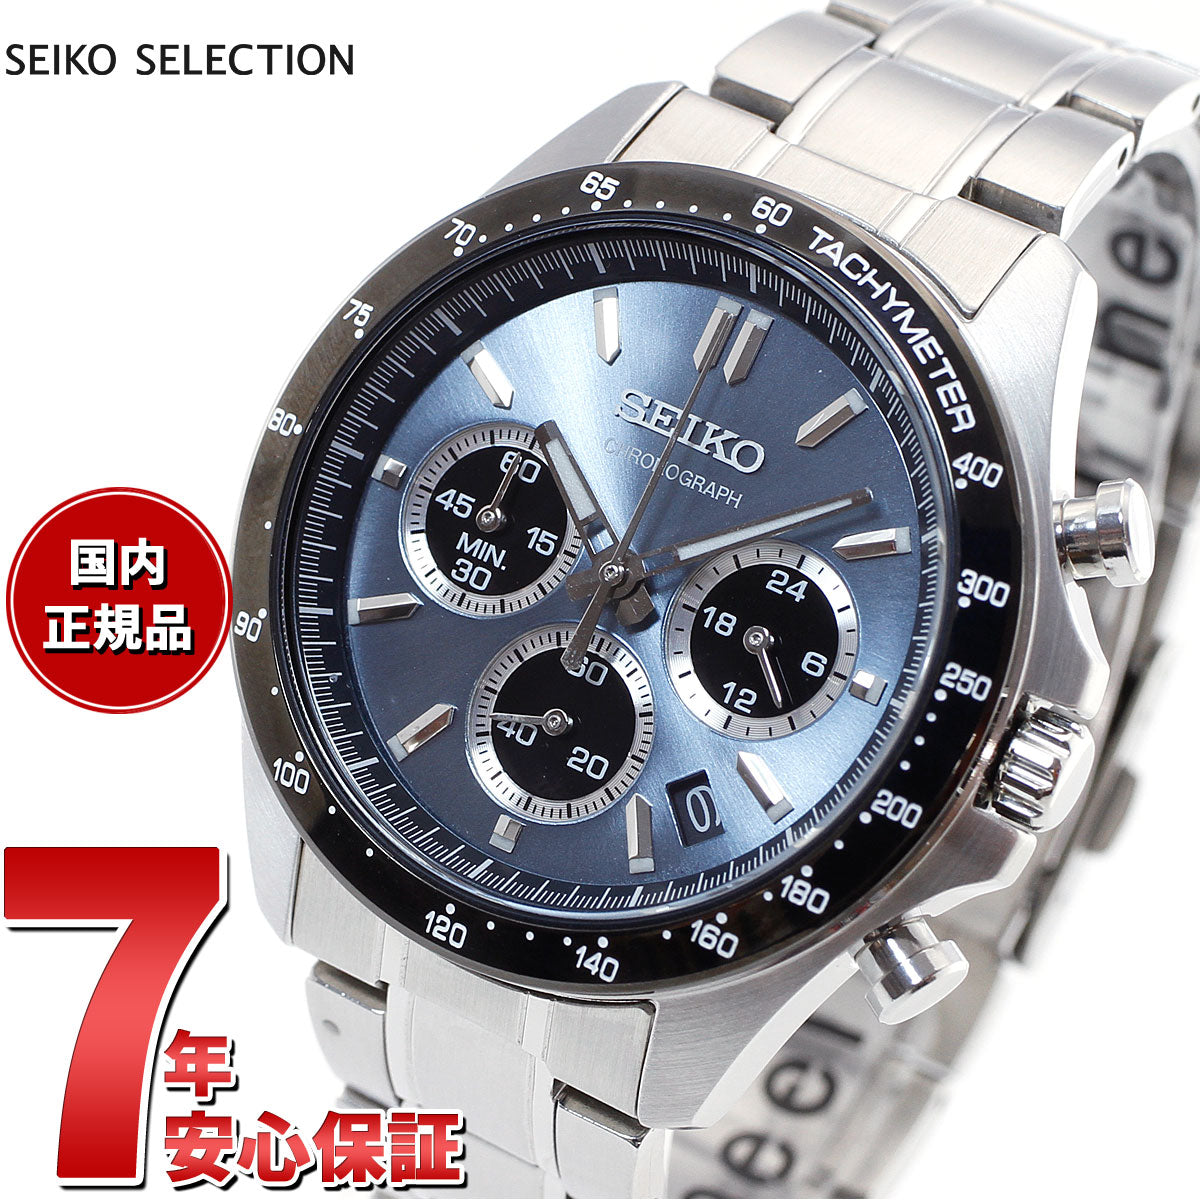 セイコー セレクション SEIKO SELECTION 8Tクロノ SBTR027 腕時計 